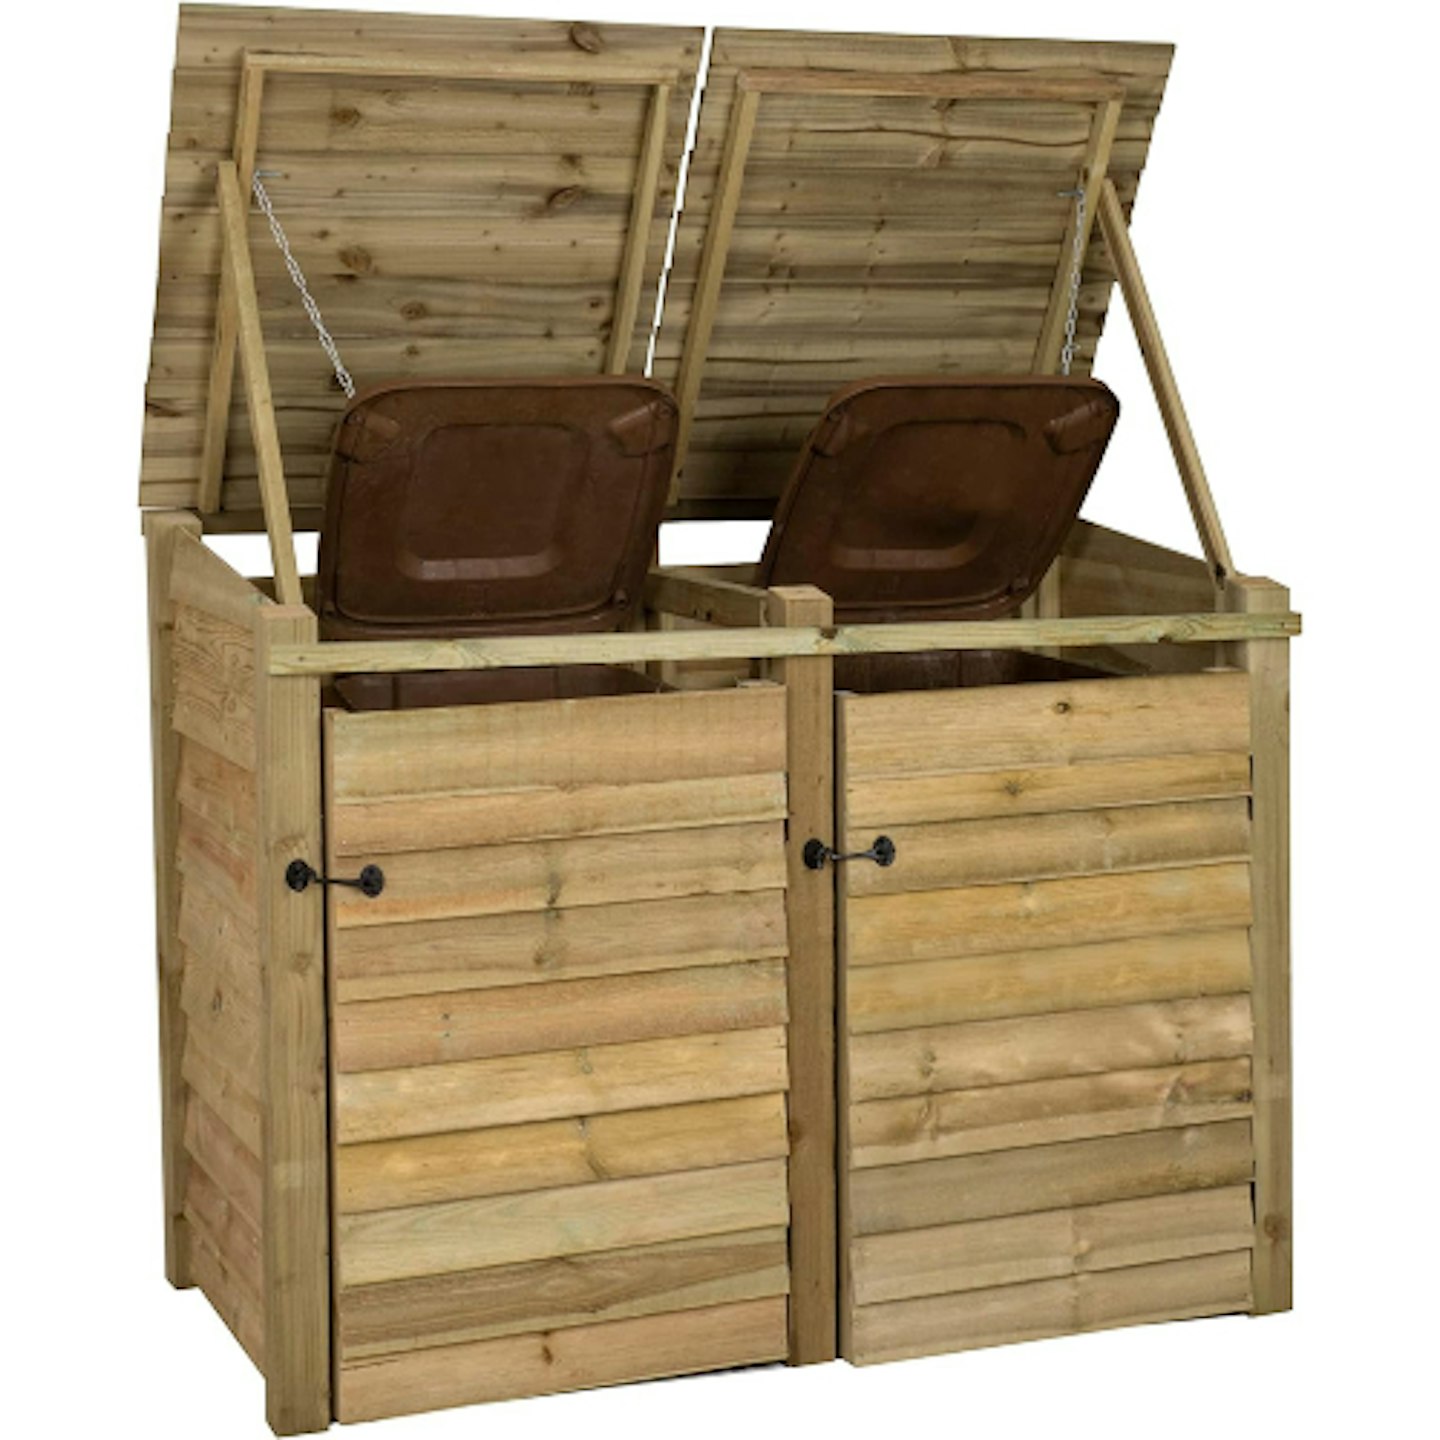 Arbor wooden bin store